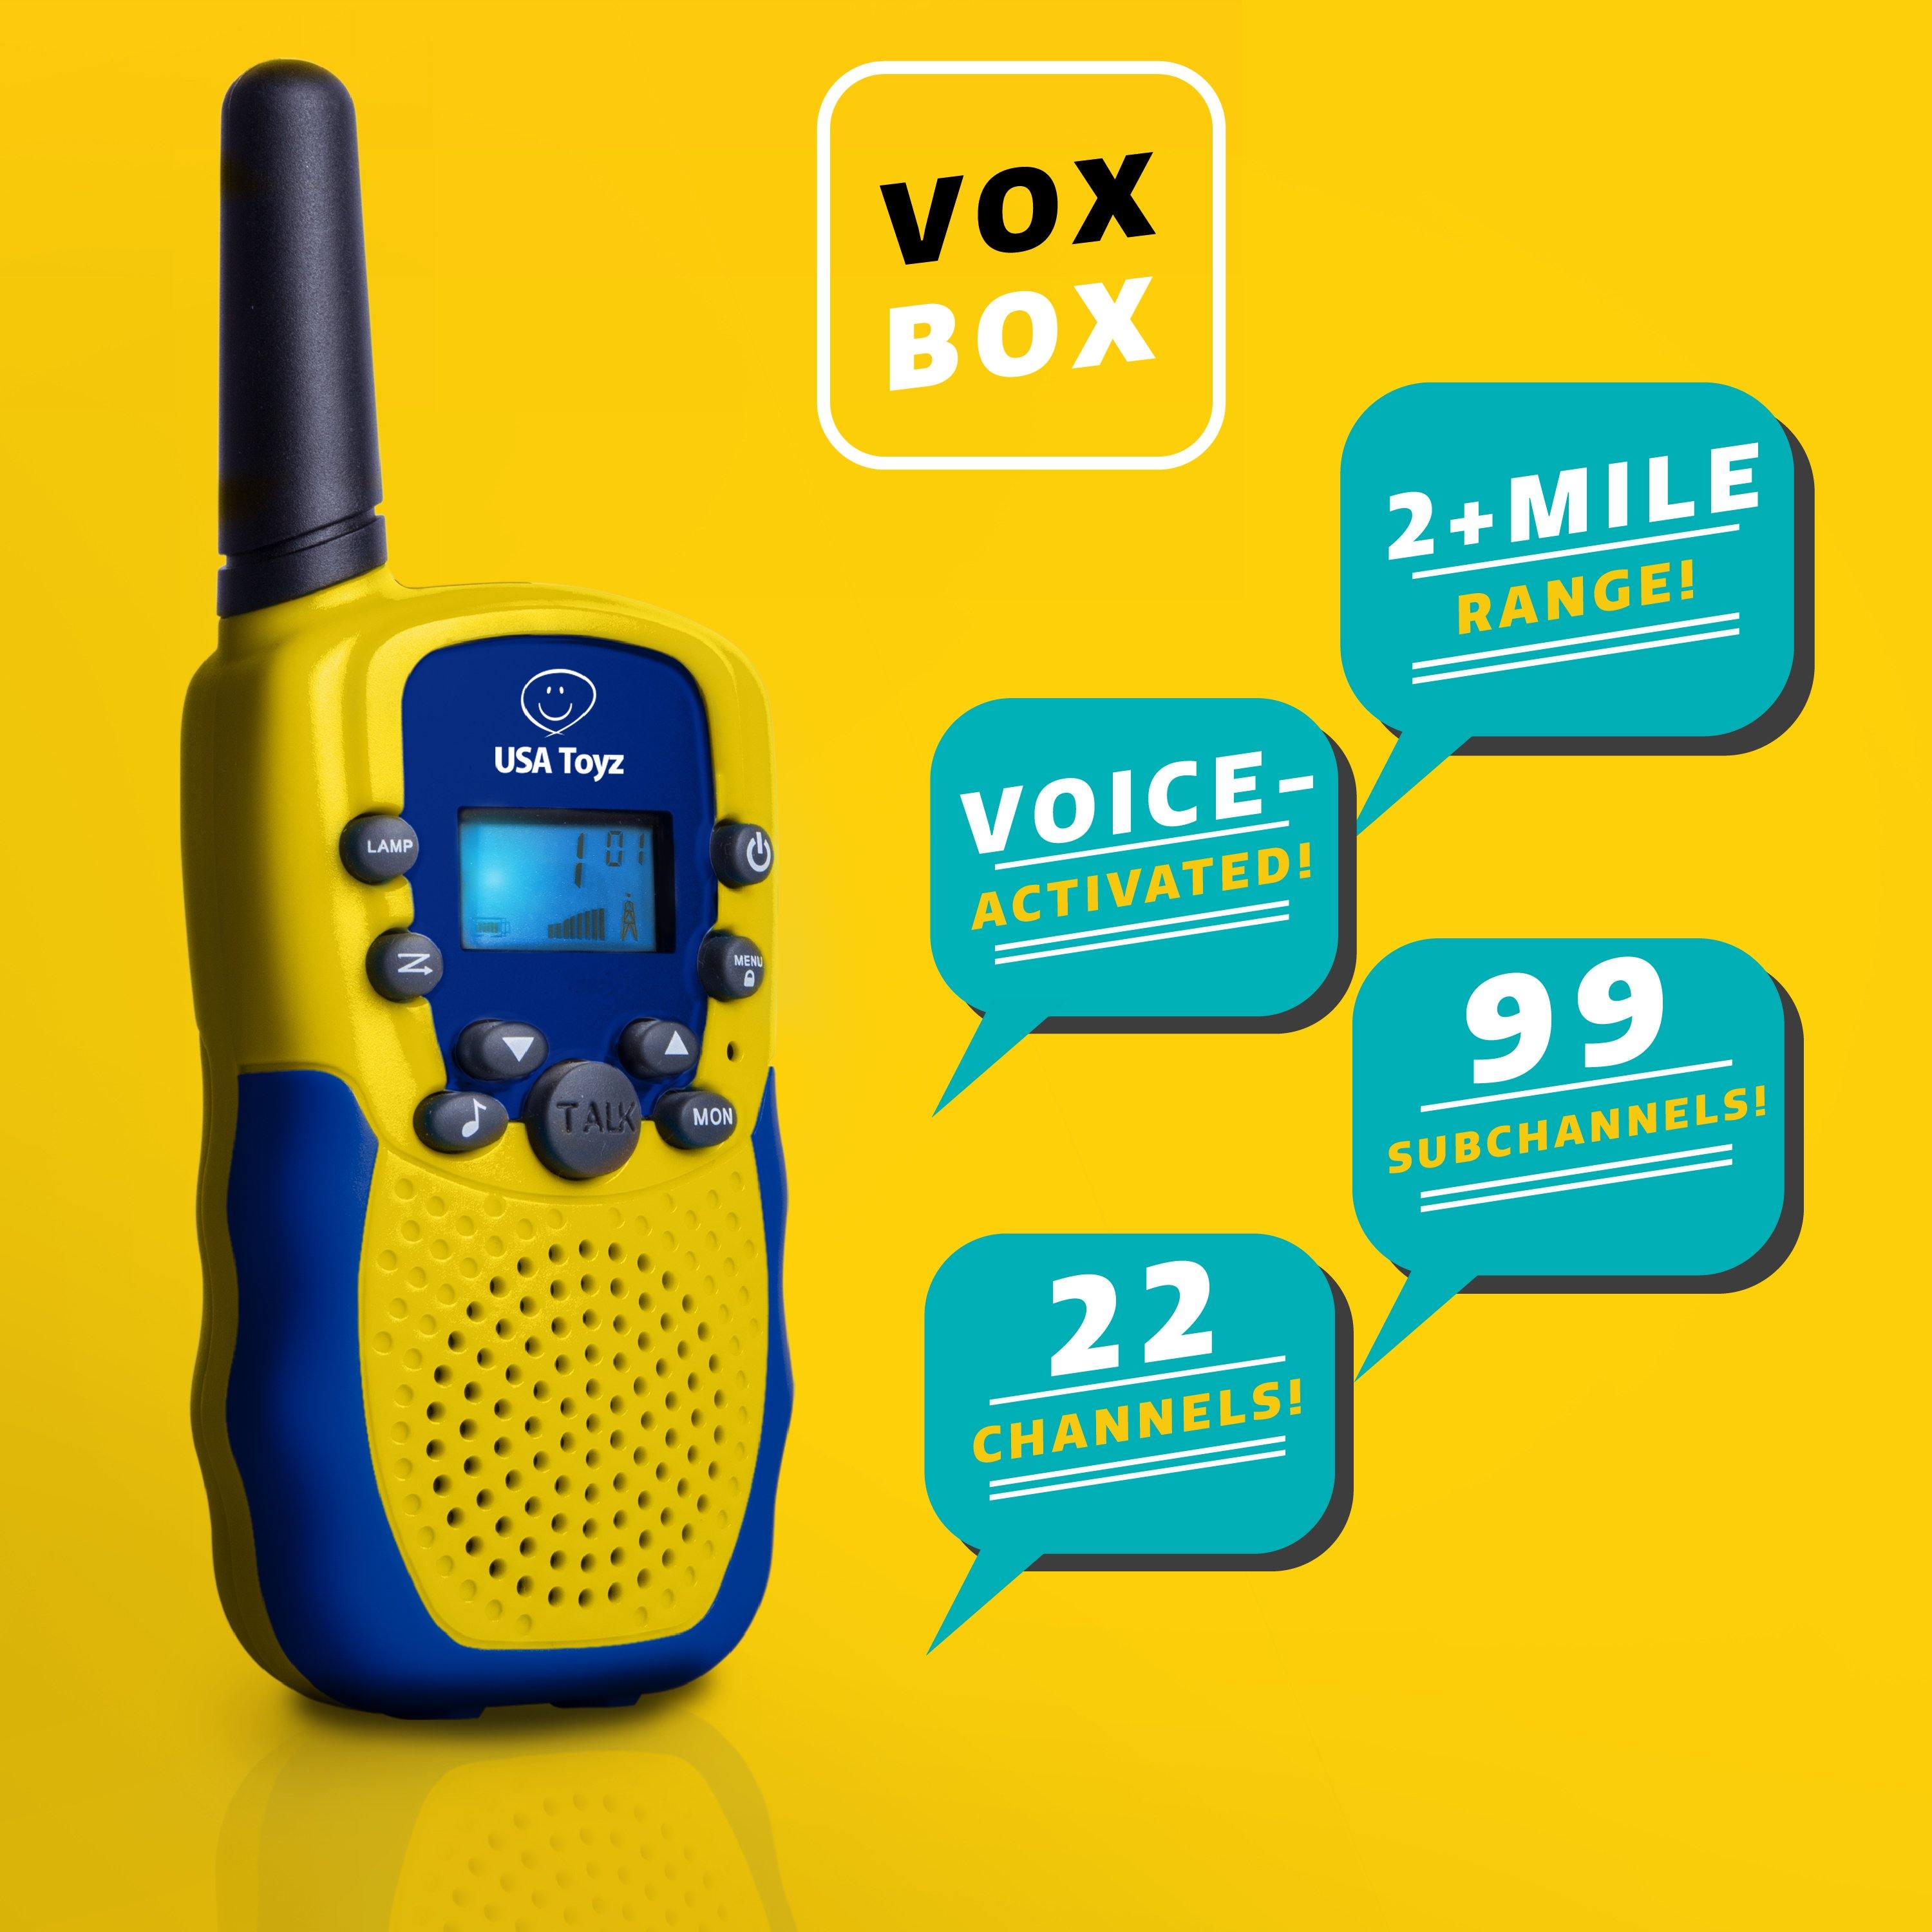 Vox Box Walkie Talkie Set - USA Toyz